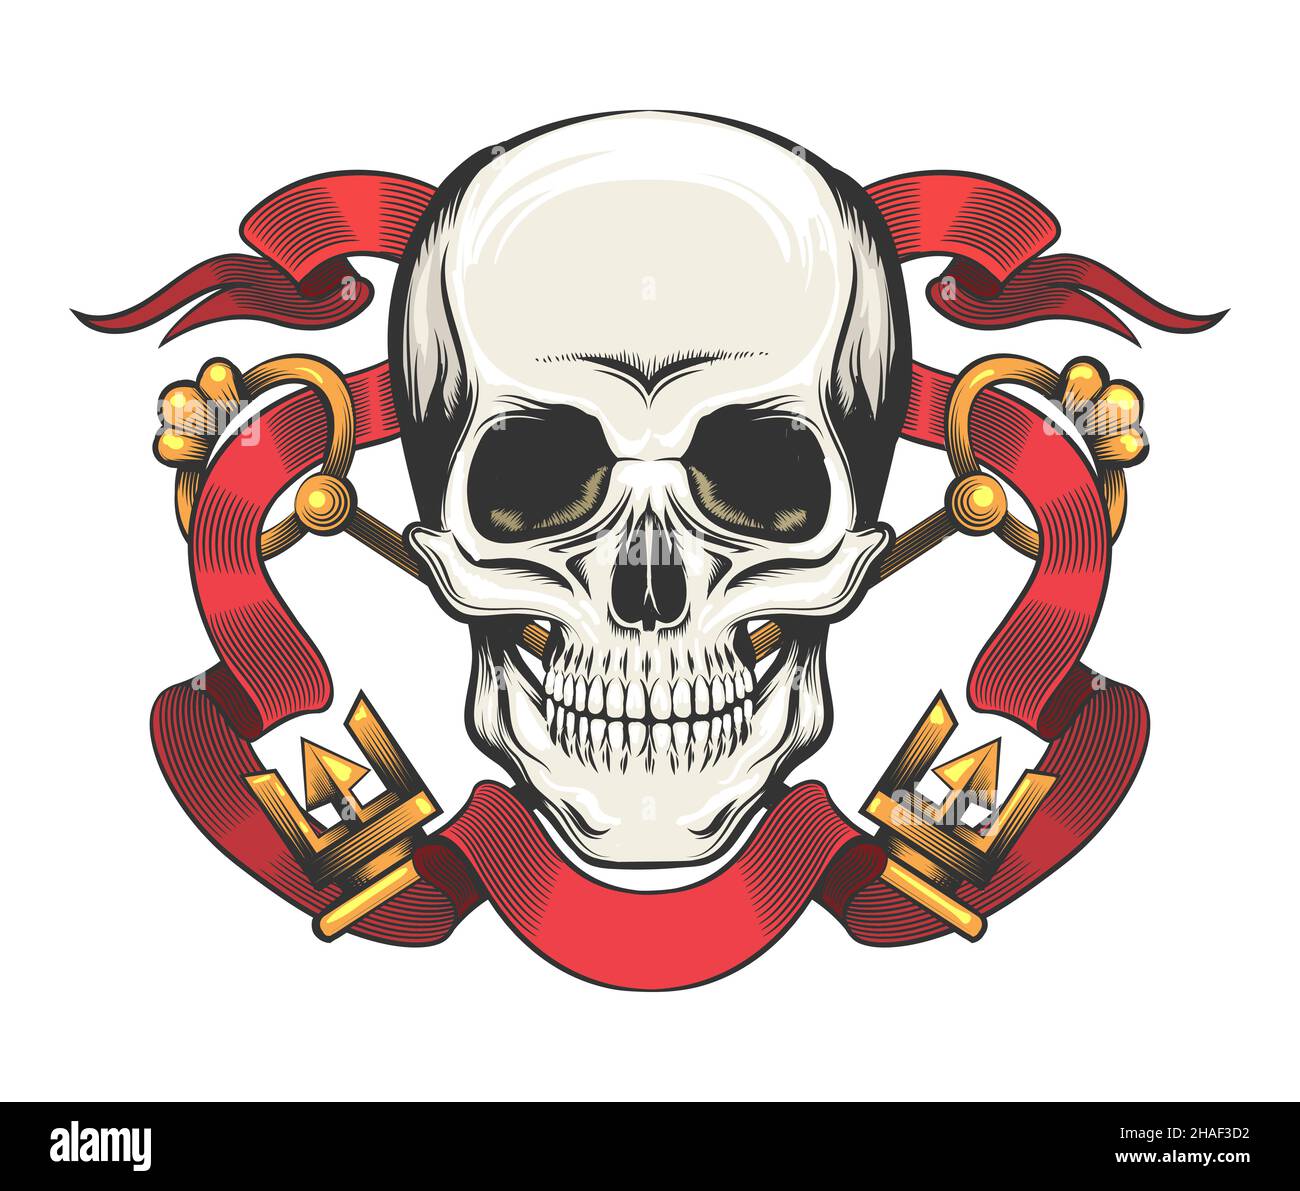 Tatuaggio del cranio con chiavi d'oro e nastro rosso. Simbolo esoterico fragilità di esistenza isolato su bianco. Illustrazione vettoriale. Illustrazione Vettoriale